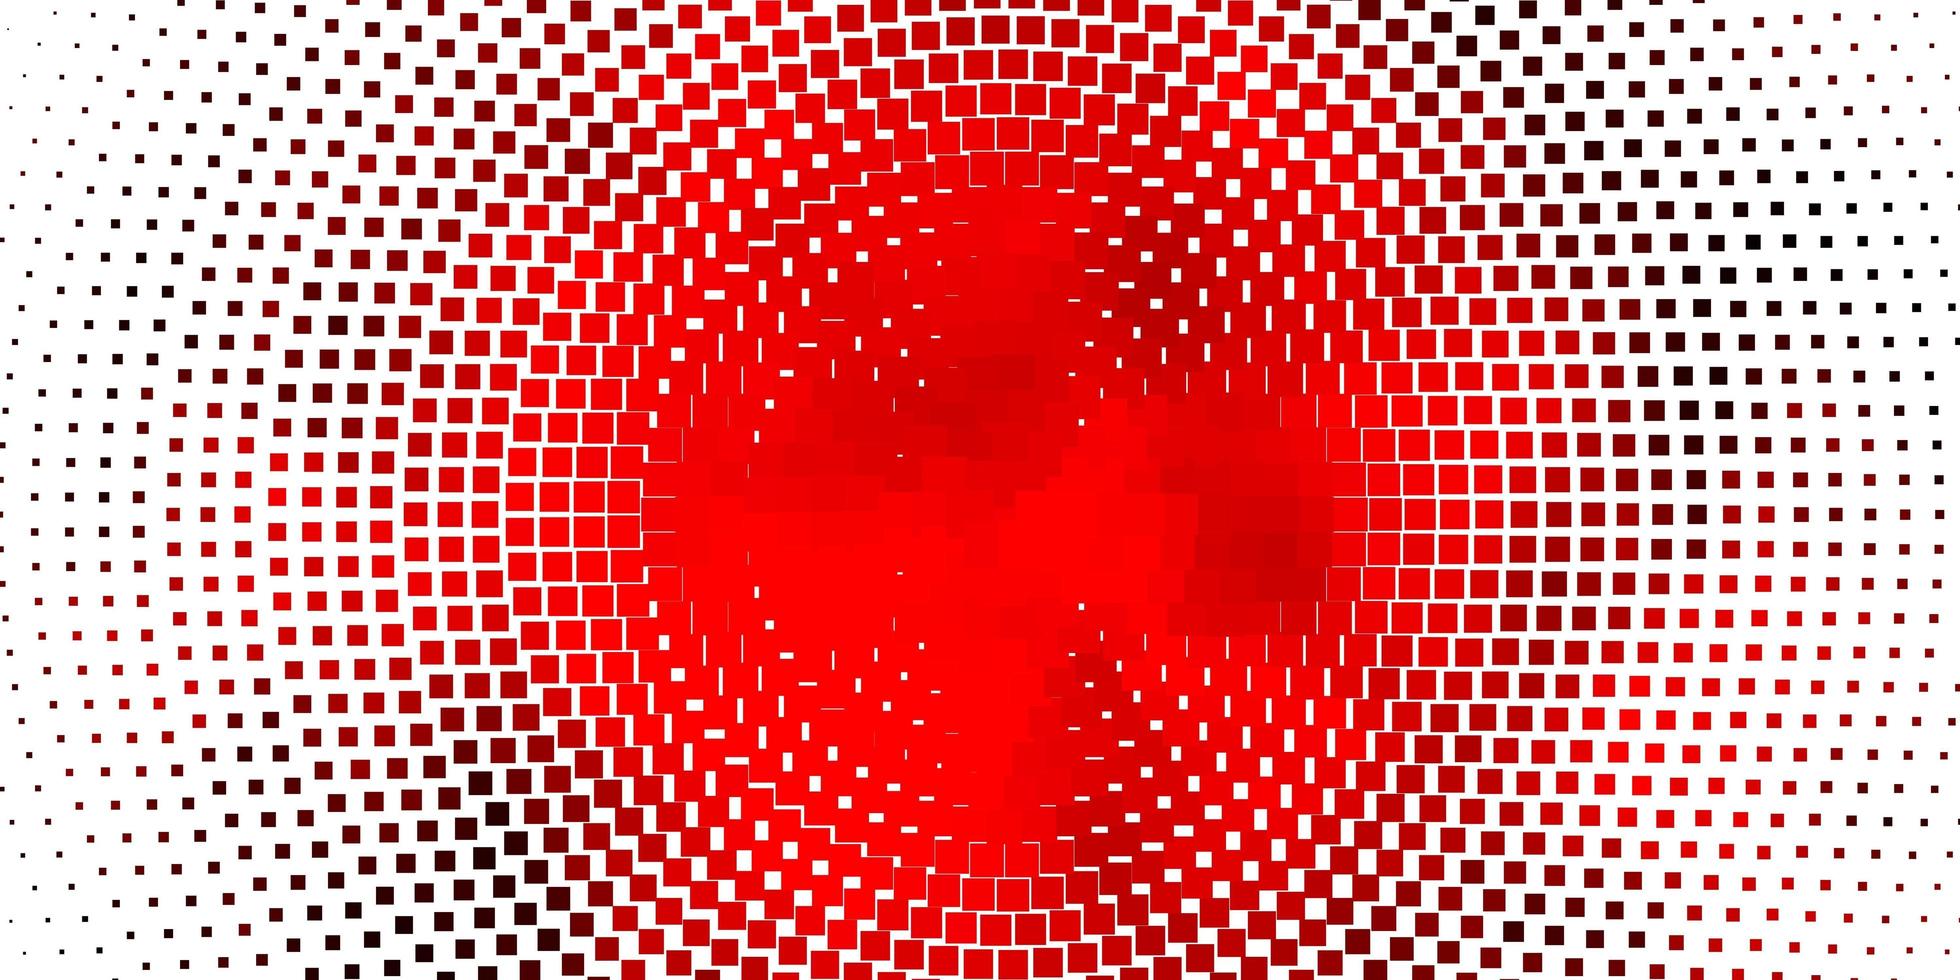 padrão de luz vermelha vetor em estilo quadrado.